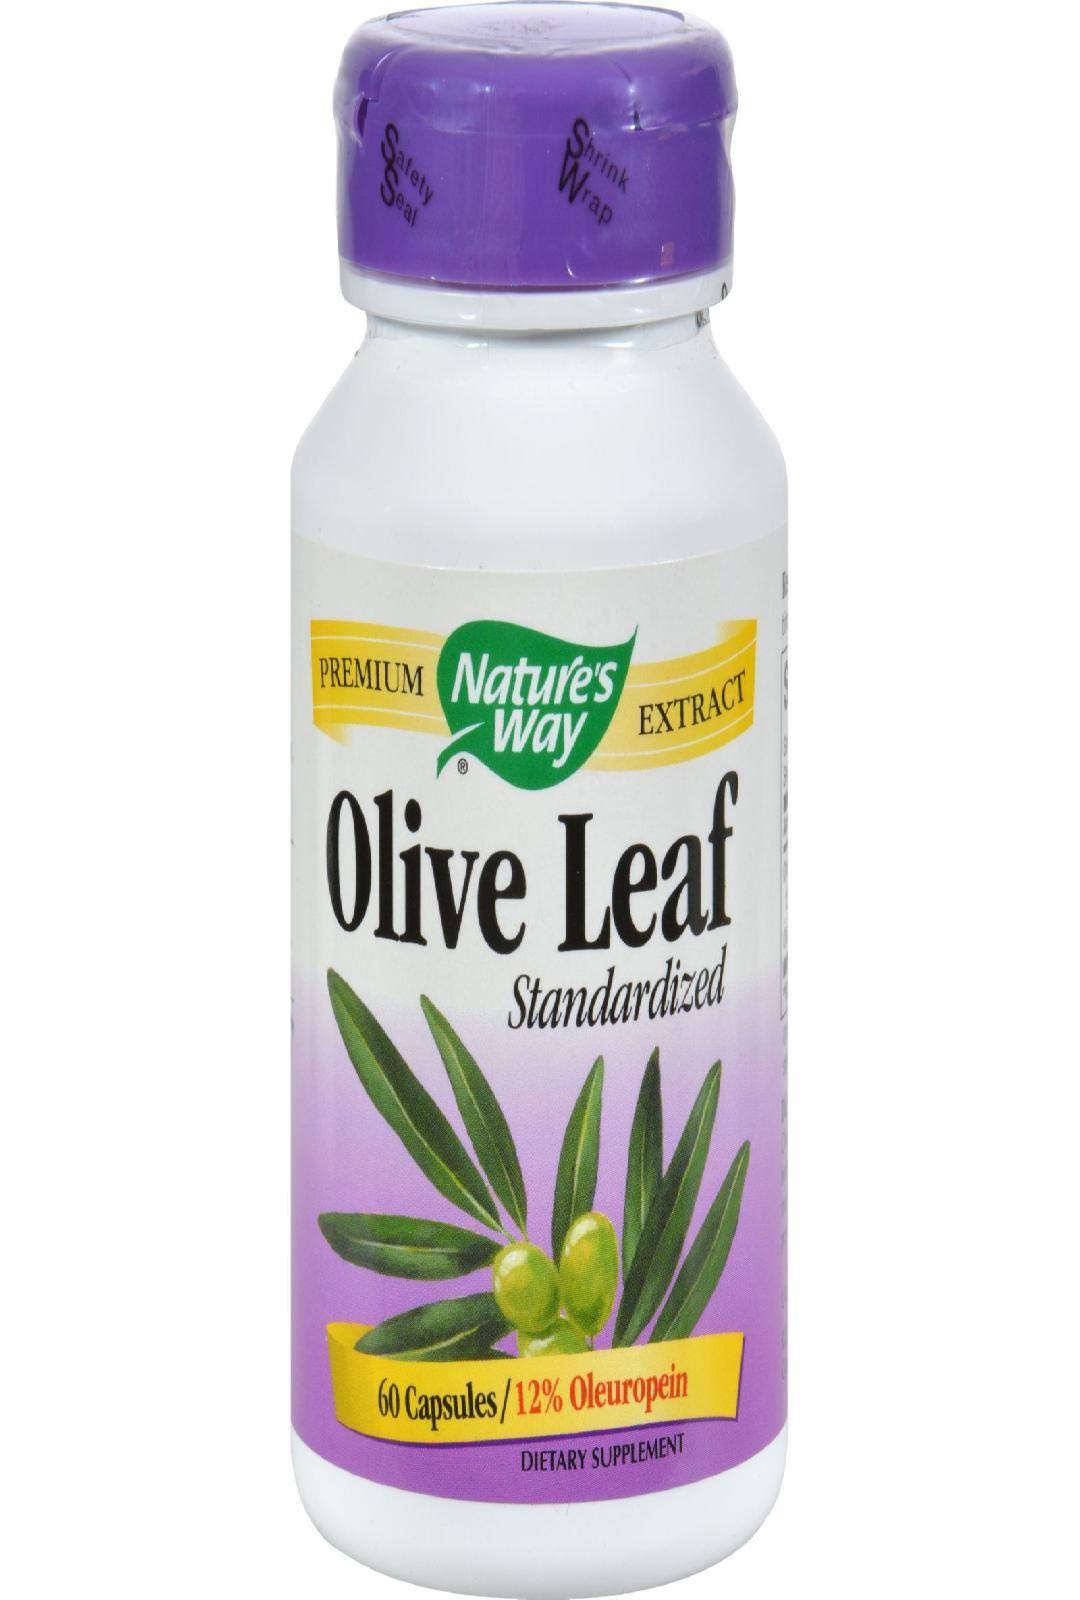 Nature's Way Olive Leaf